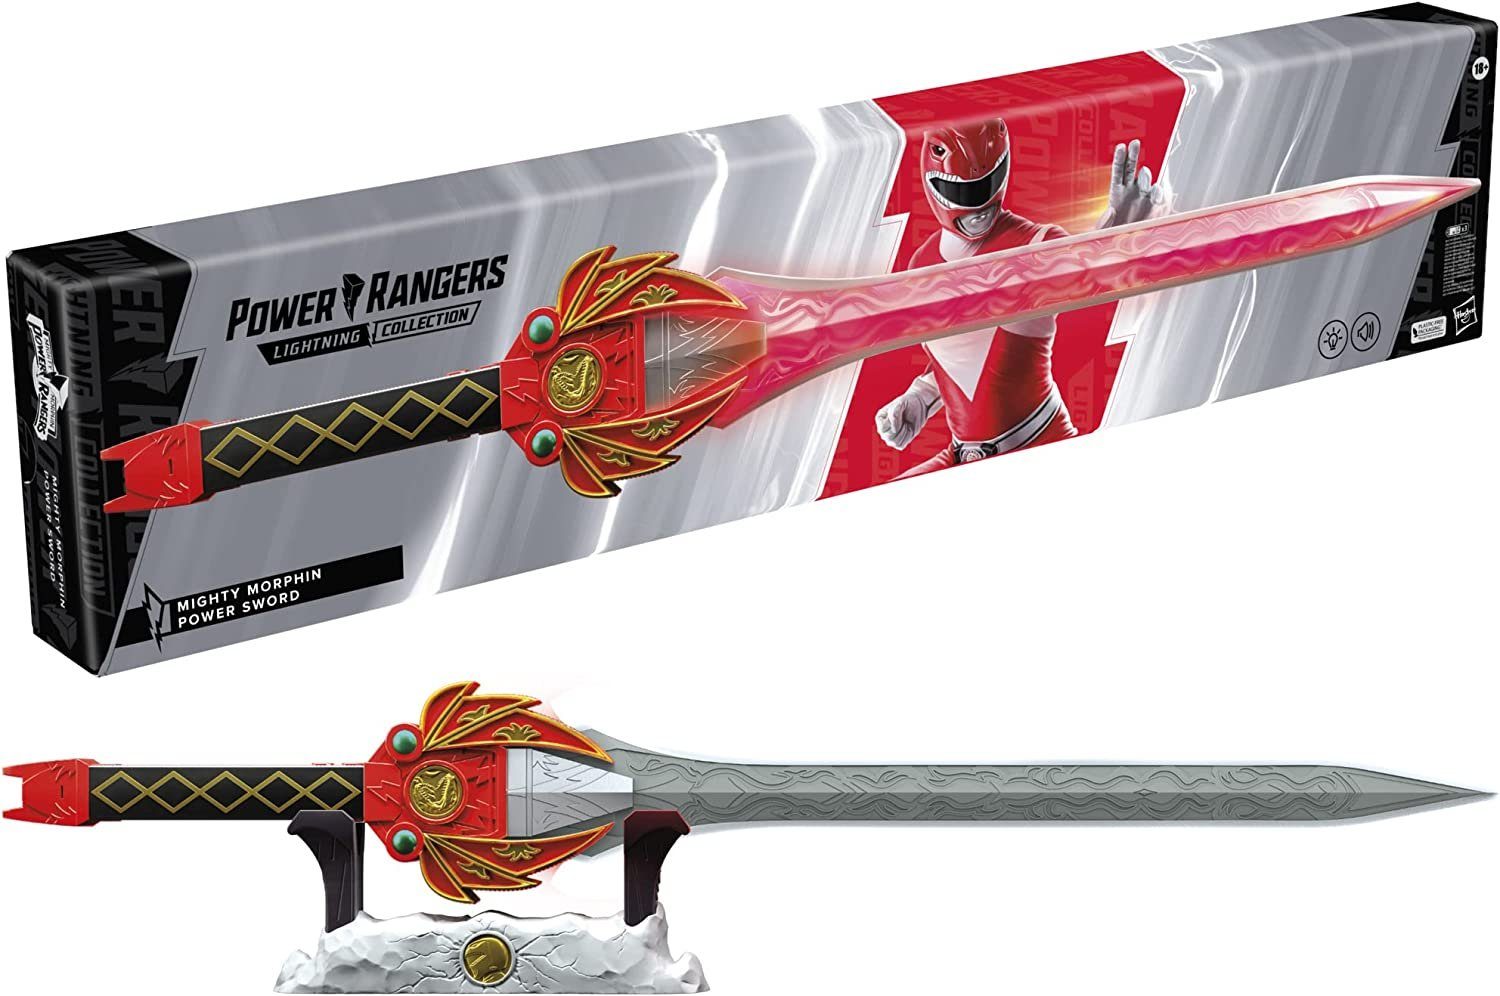 Hasbro Actionfigur Power Rangers - Lightning Collection - Mighty Morphin Red Ranger Power Sword - elektronisches Schwert | Action-Figuren